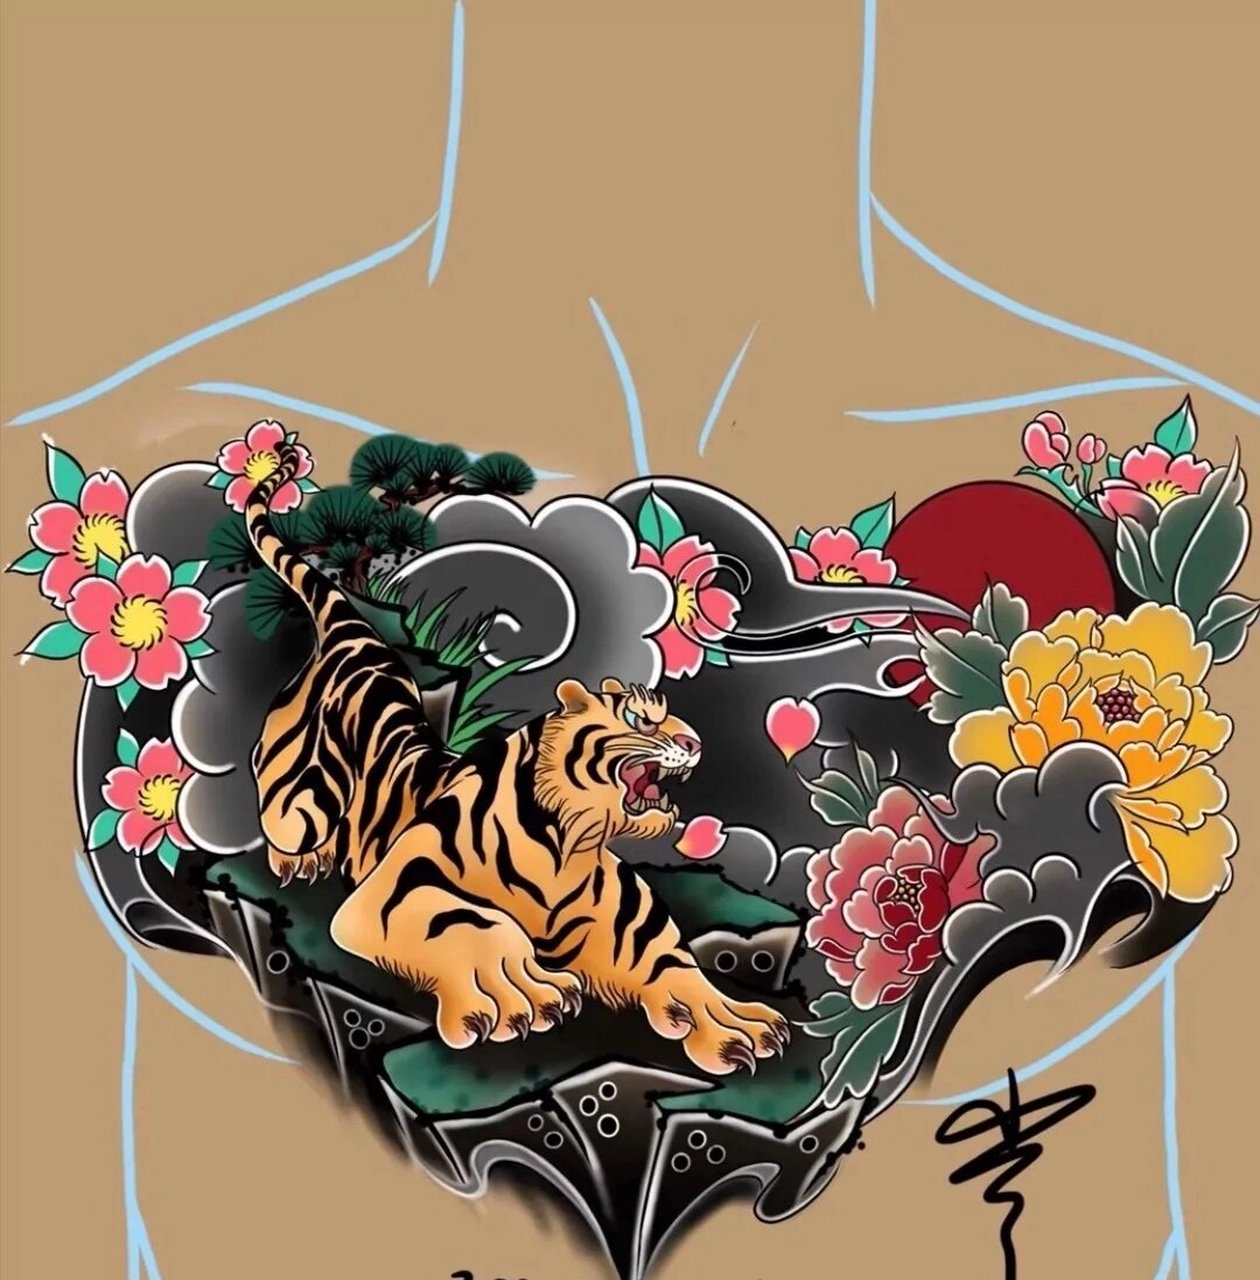 花胸纹身手稿最新花胸刺青图案    好看的花胸纹身手稿图集